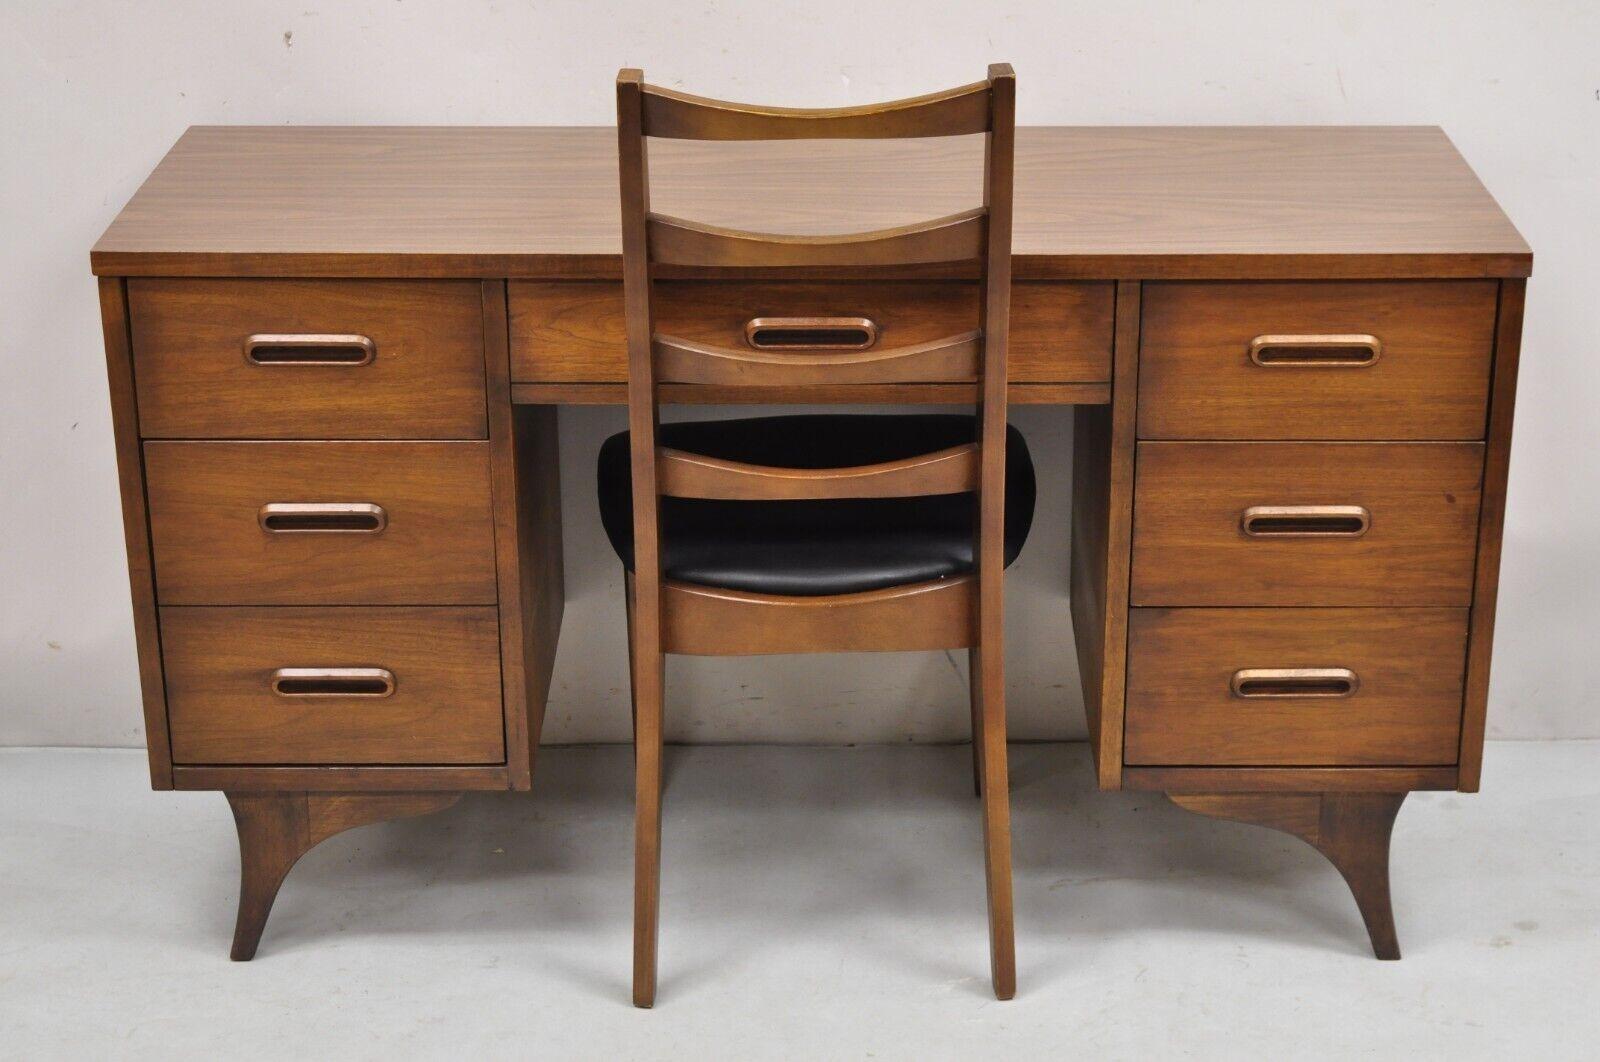 Vintage Mid Century Modern Walnut Sculpted Legs Kneehole Desk & Chair - 2 Pc Set. Ce meuble présente un plateau stratifié marron, 6 tiroirs à queue d'aronde, des poignées de tiroirs et des pieds en bois sculpté, une chaise à dossier en échelle, des